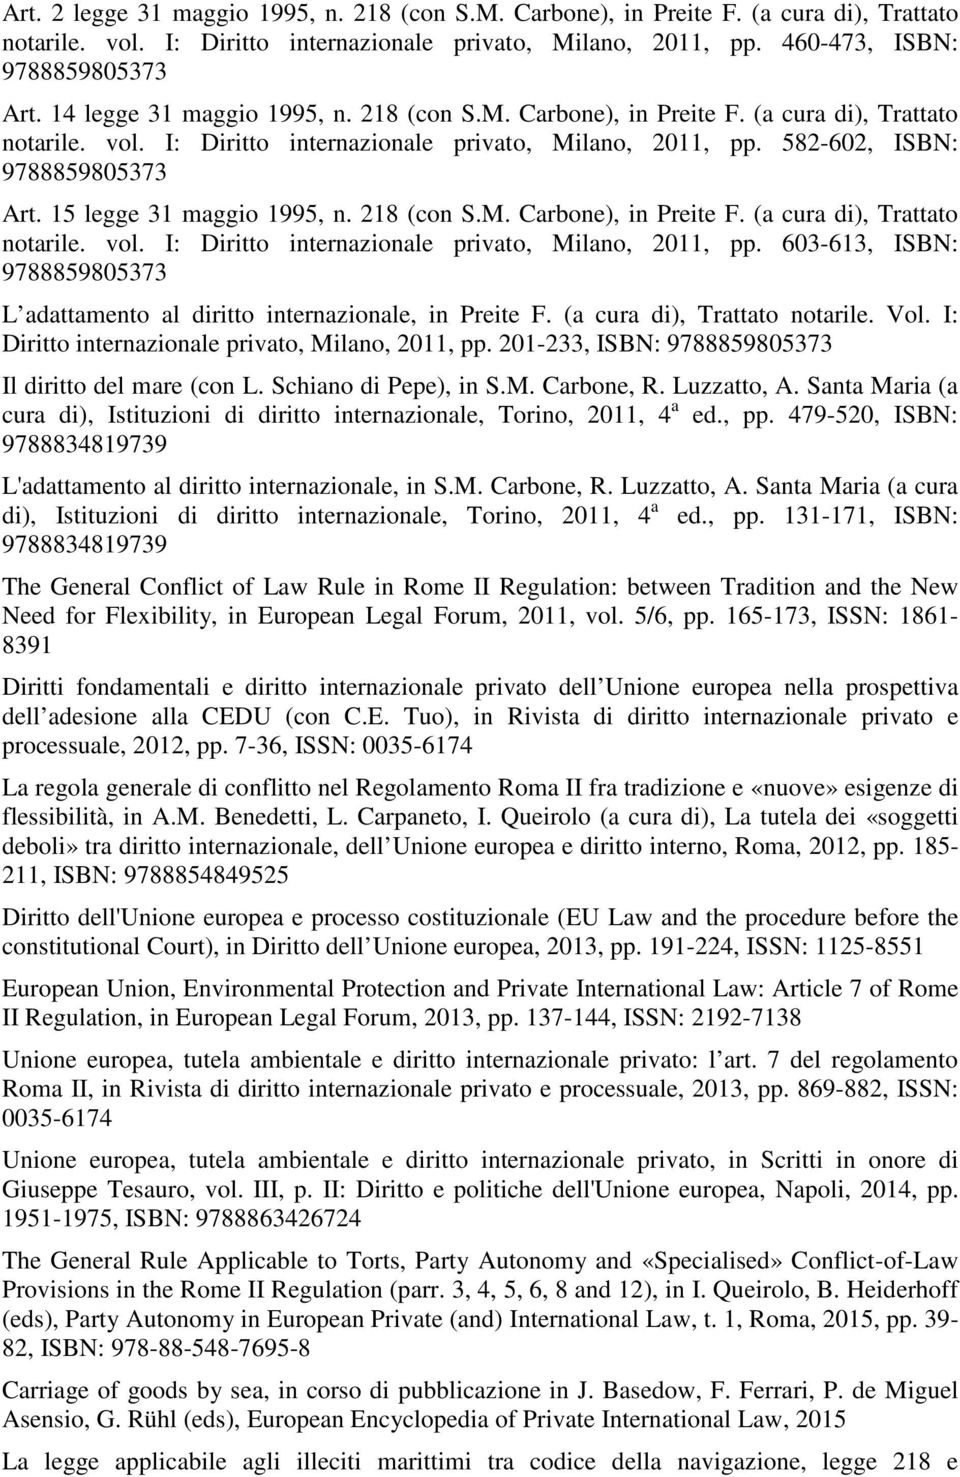 15 legge 31 maggio 1995, n. 218 (con S.M. Carbone), in Preite F. (a cura di), Trattato notarile. vol. I: Diritto internazionale privato, Milano, 2011, pp.